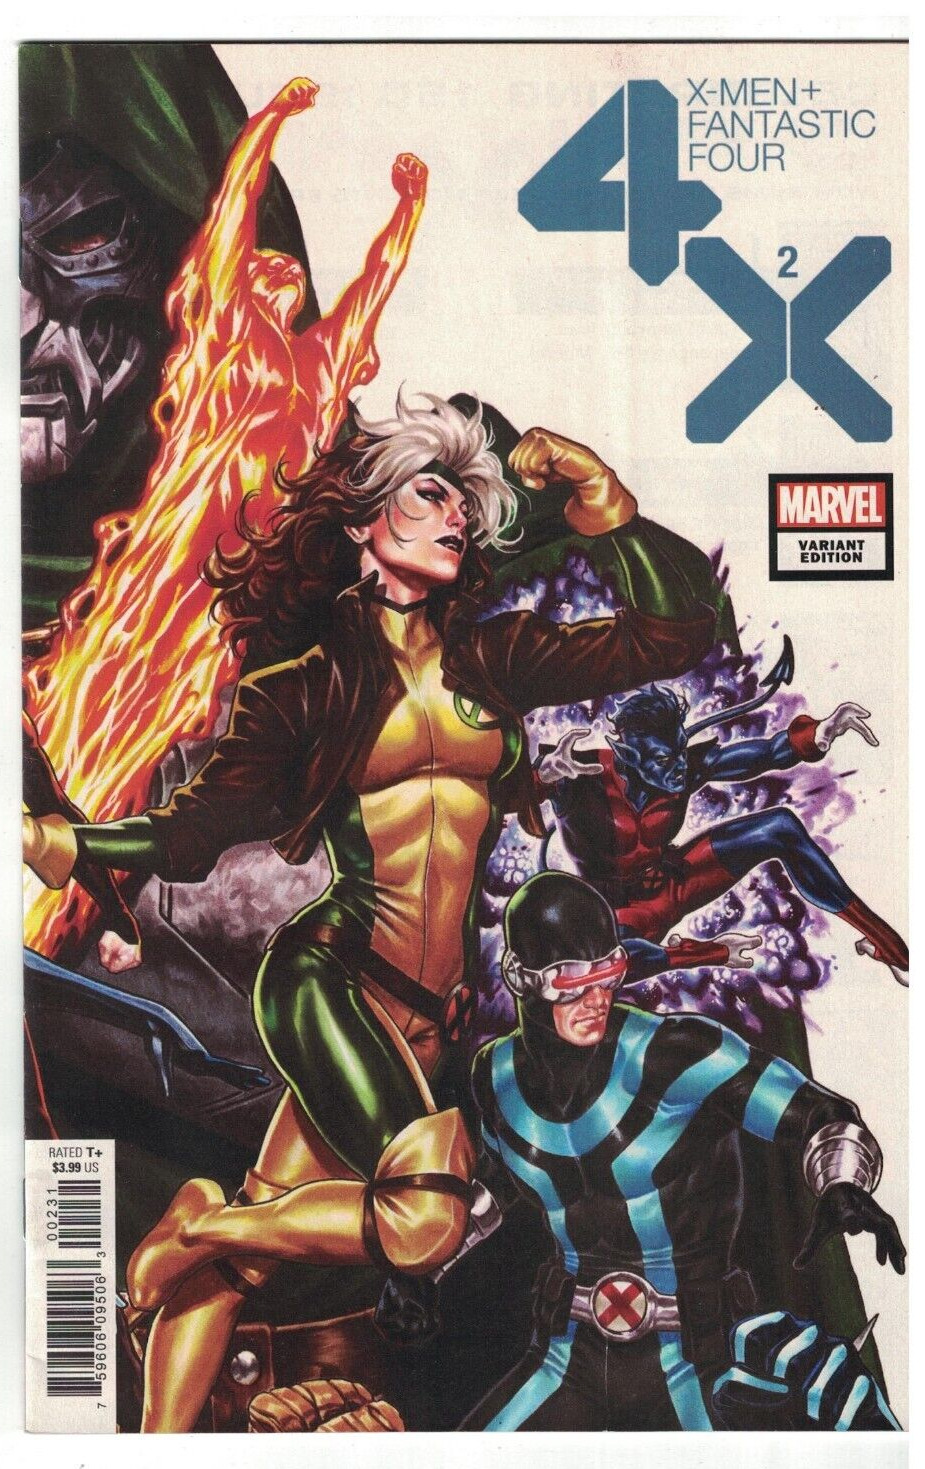 X-MEN FANTASTIC FOUR #2 (OF 4) BROOKS VARIANT  2020 DAMAGED READERS COPY